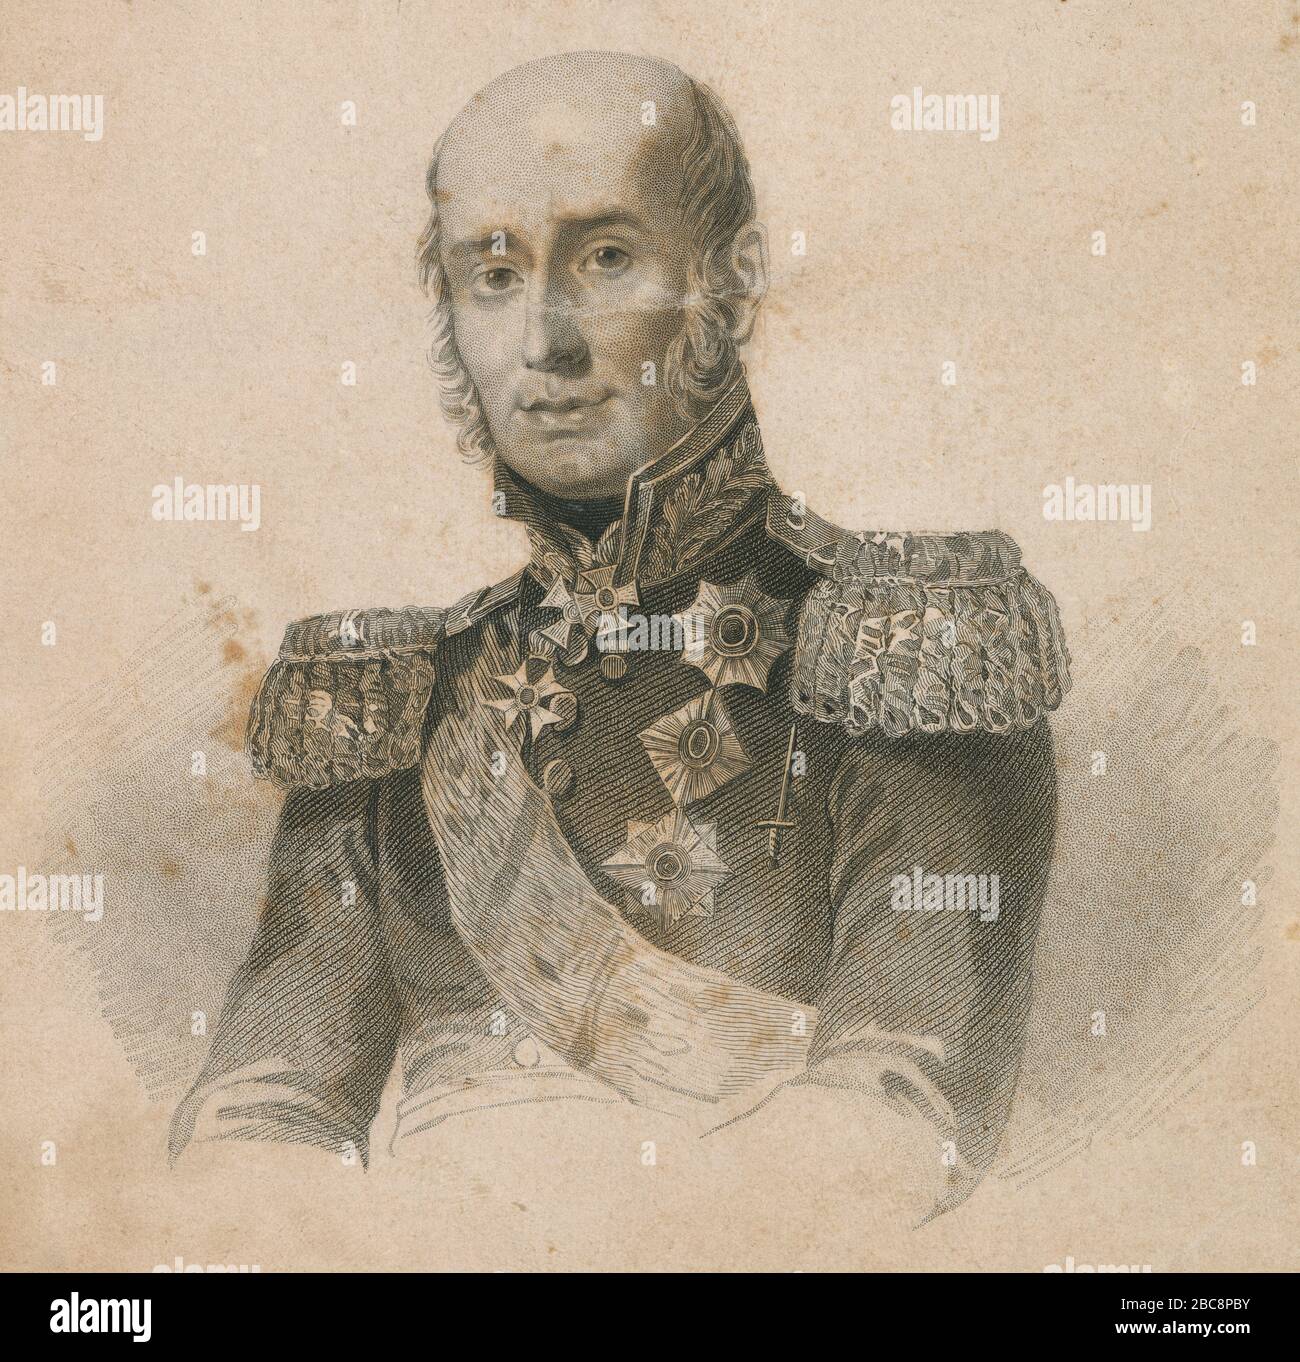 Incisione antica, Michael Andreas Barclay de Tolly. Il principe Michael Andreas Barclay de Tolly (1761-1818) era un maresciallo tedesco del Baltico e ministro della guerra dell'Impero russo durante l'invasione di Napoleone nel 1812 e la guerra della Sesta coalizione. FONTE: INCISIONE ORIGINALE Foto Stock